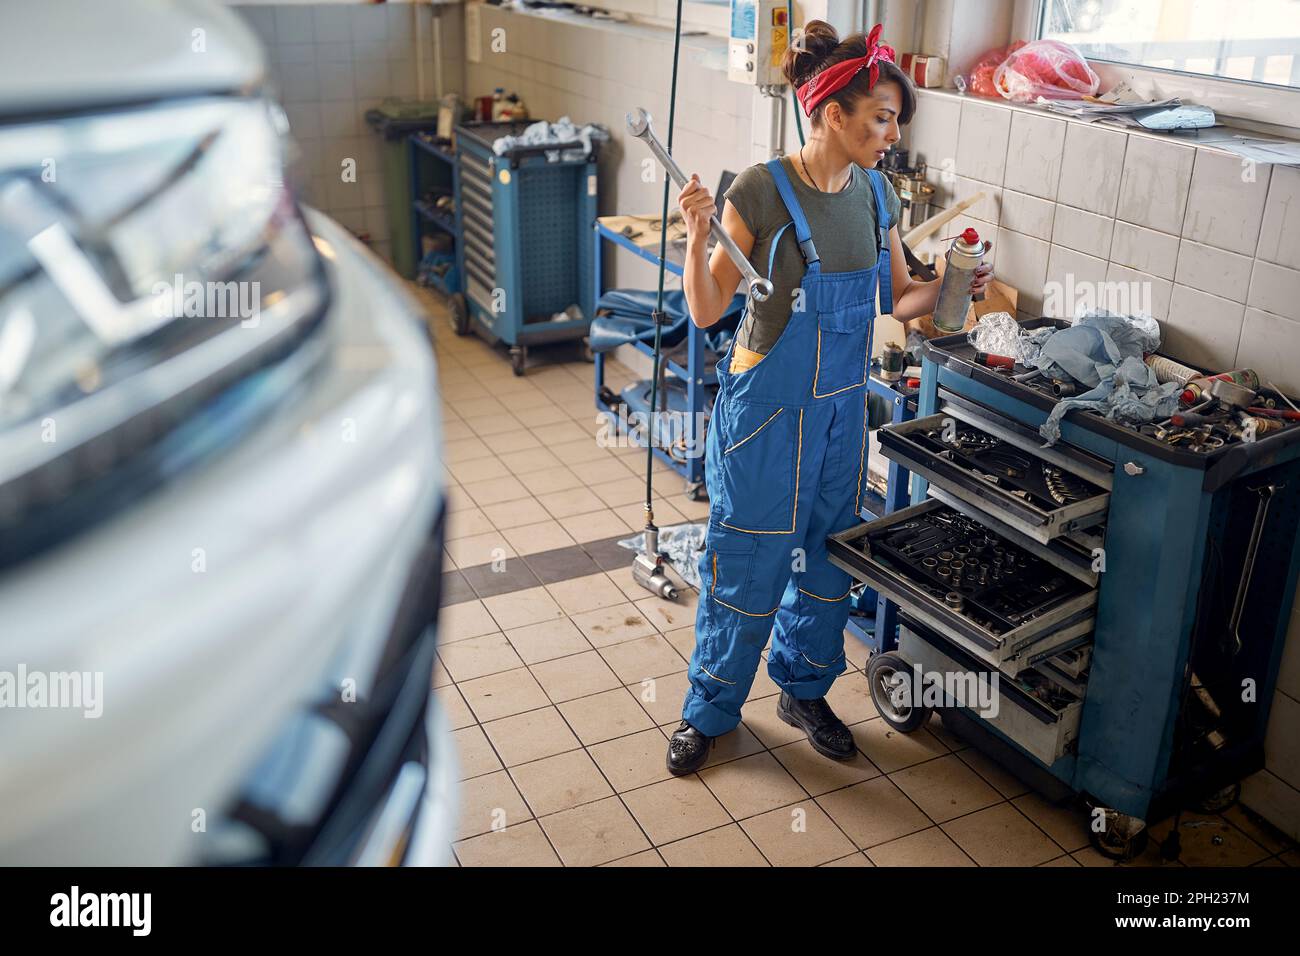 Mujer mecánica working.young mecánico femenino divirtiéndose en el trabajo Foto de stock